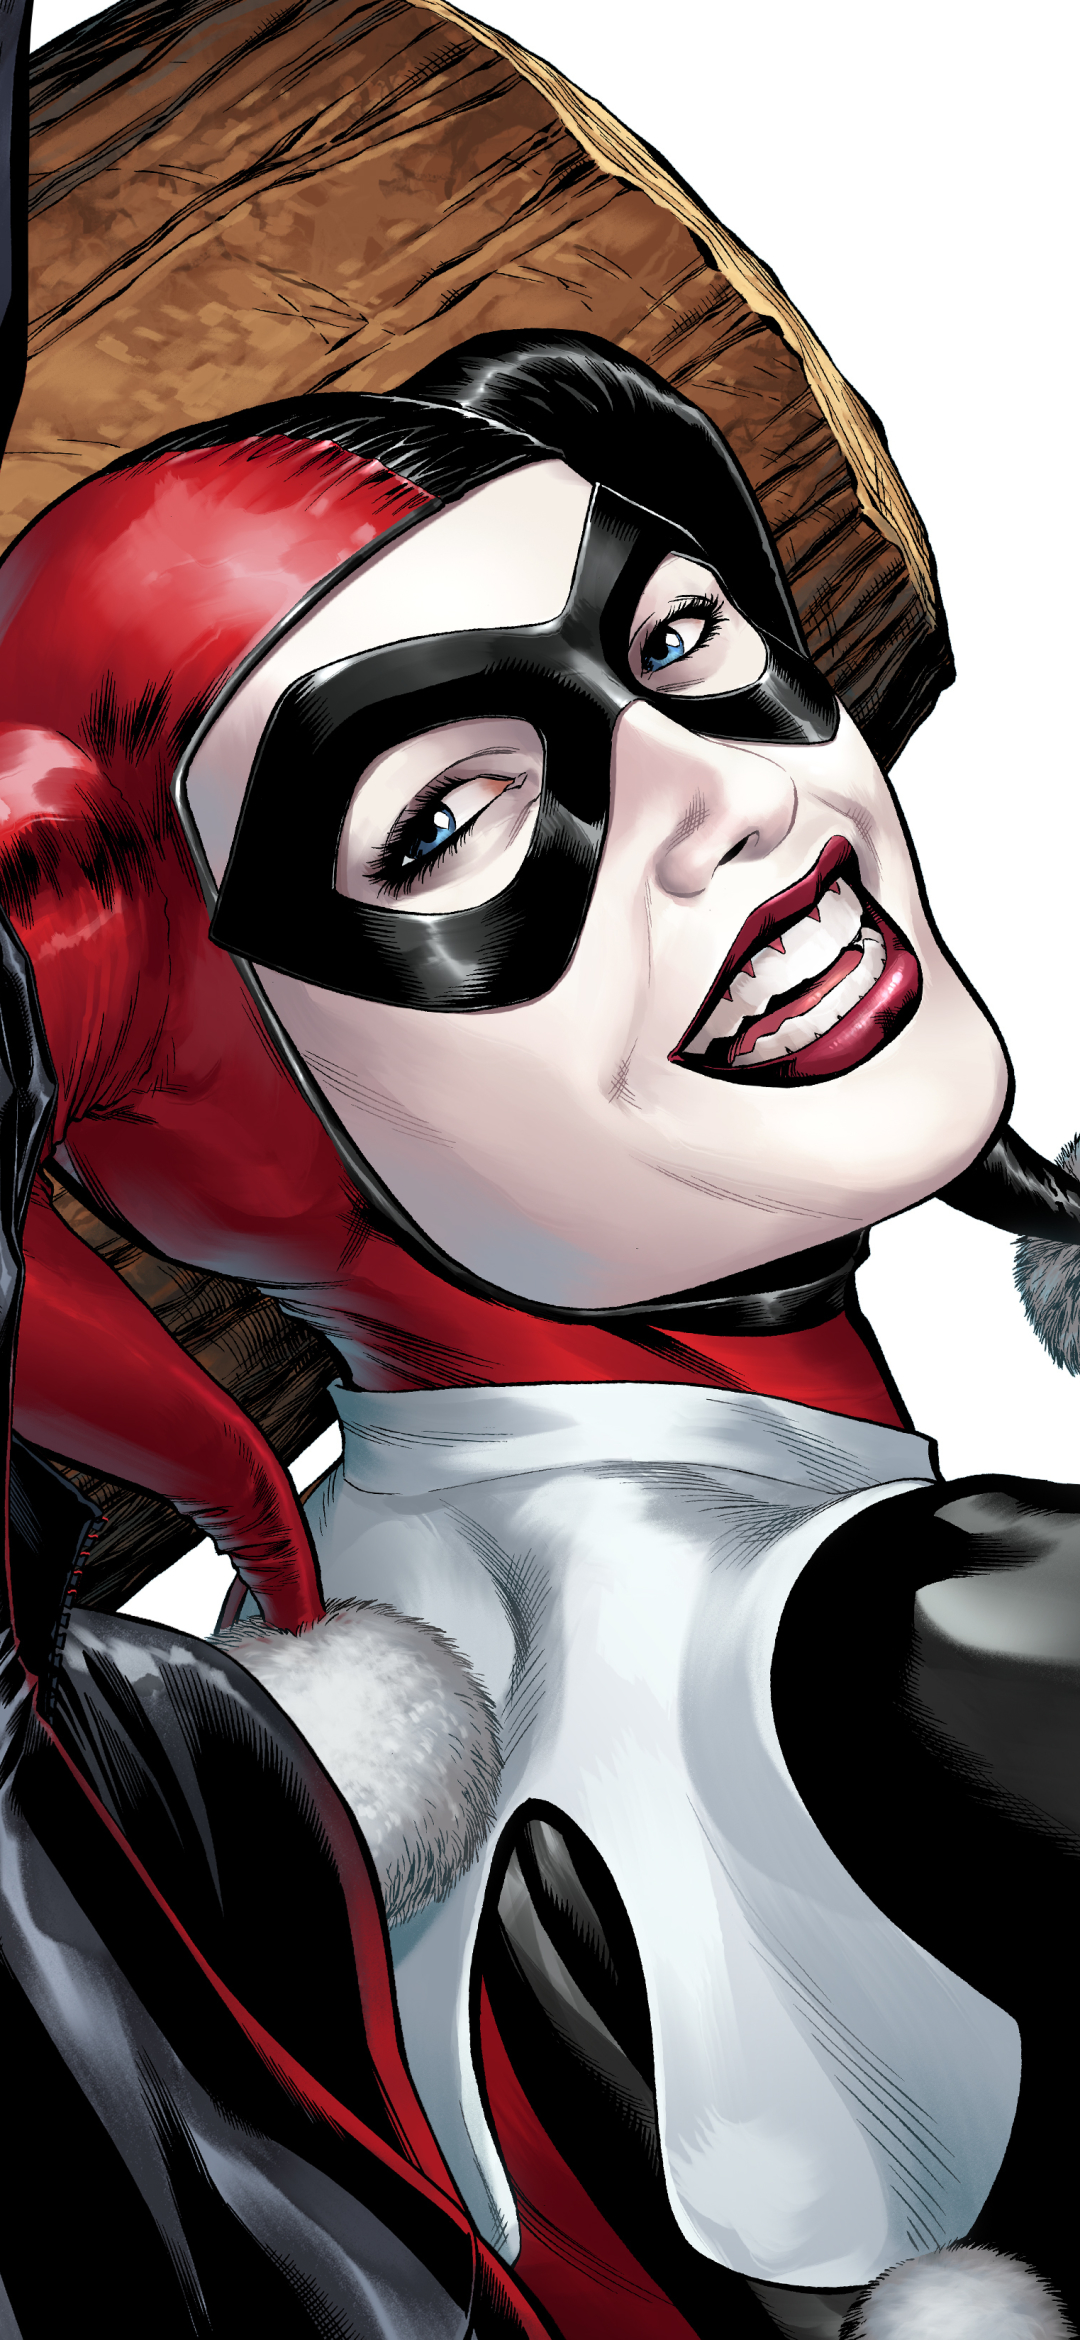 Descarga gratuita de fondo de pantalla para móvil de Historietas, Harley Quinn, Dc Comics, Gotham City Sirens.